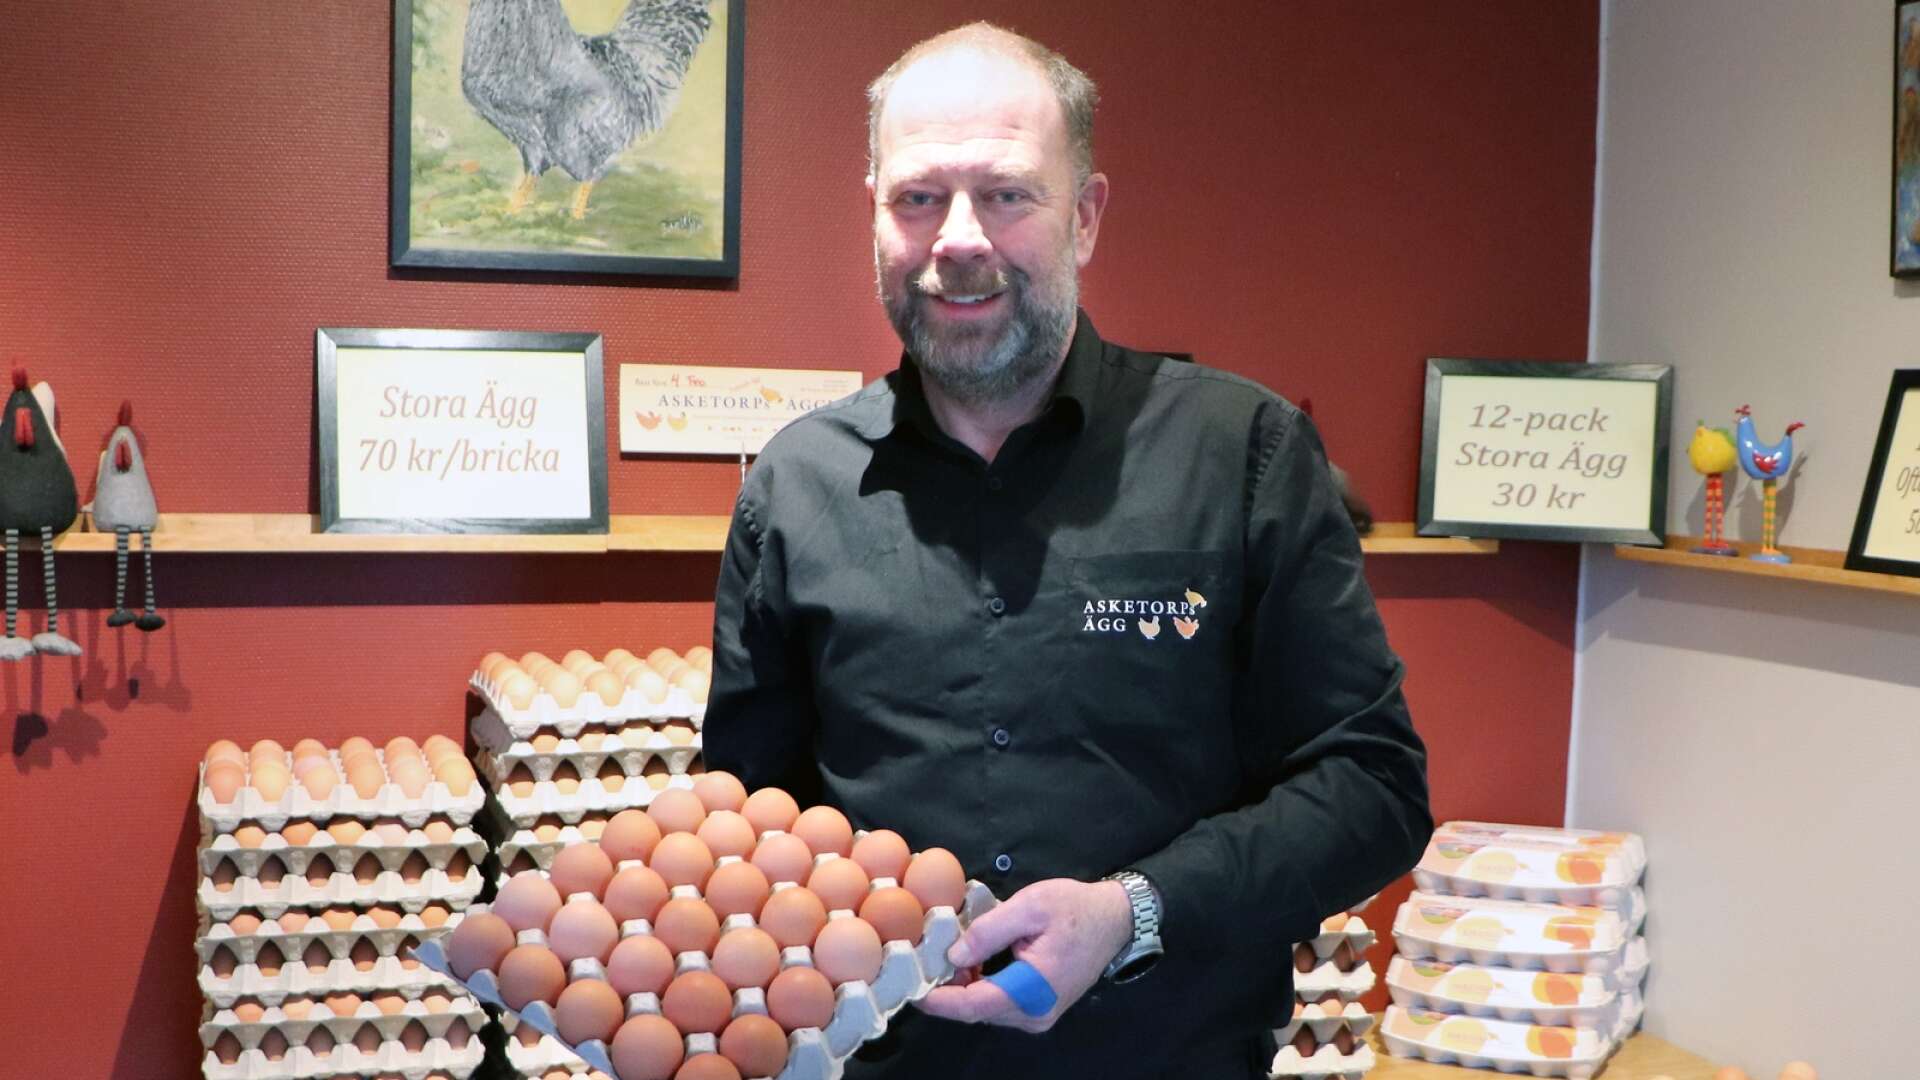 Asketorps ägg har haft fler kunder i sin gårdsbutik utanför Skövde de senaste dagarna. ”Det är troligt att vi kommer att se en ökad efterfrågan även i livsmedelsbutikerna” säger Magnus Bertilsson.